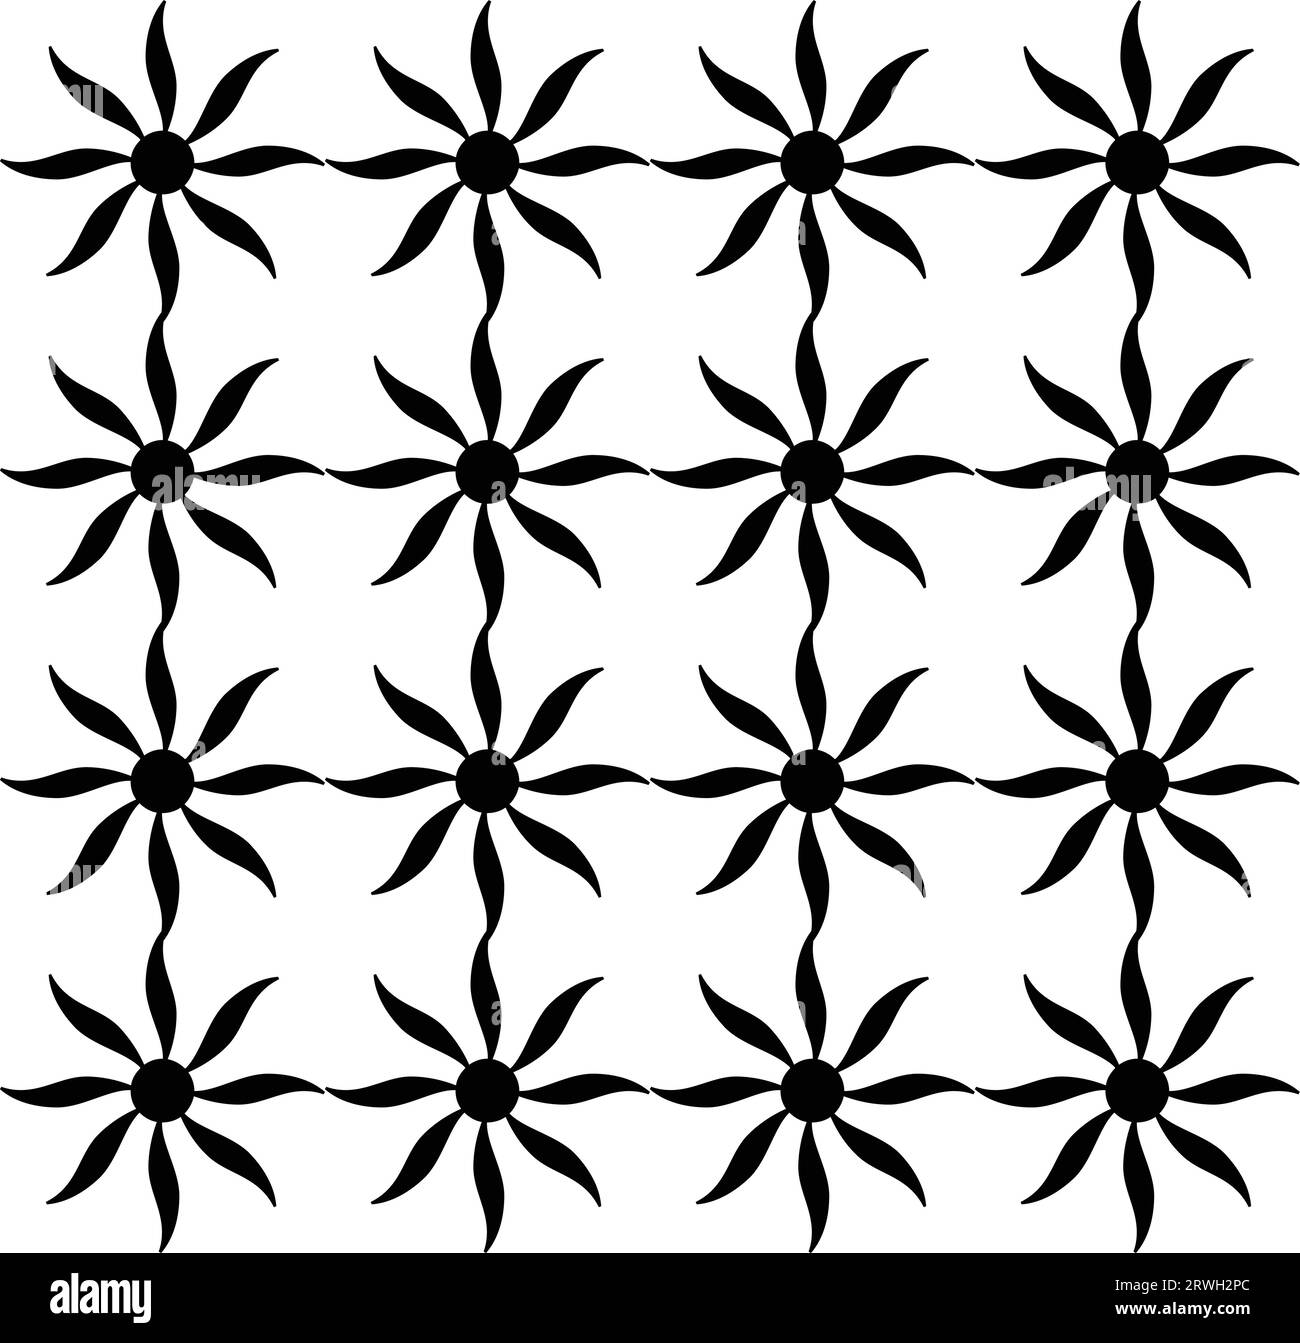 Abstraktes nahtloses Muster mit Silhouetten in Schwarz und weiß. Sich wiederholender monochromer Hintergrund mit Blumenmuster. Endlose Drucktextur. Stoffdesign. Stock Vektor